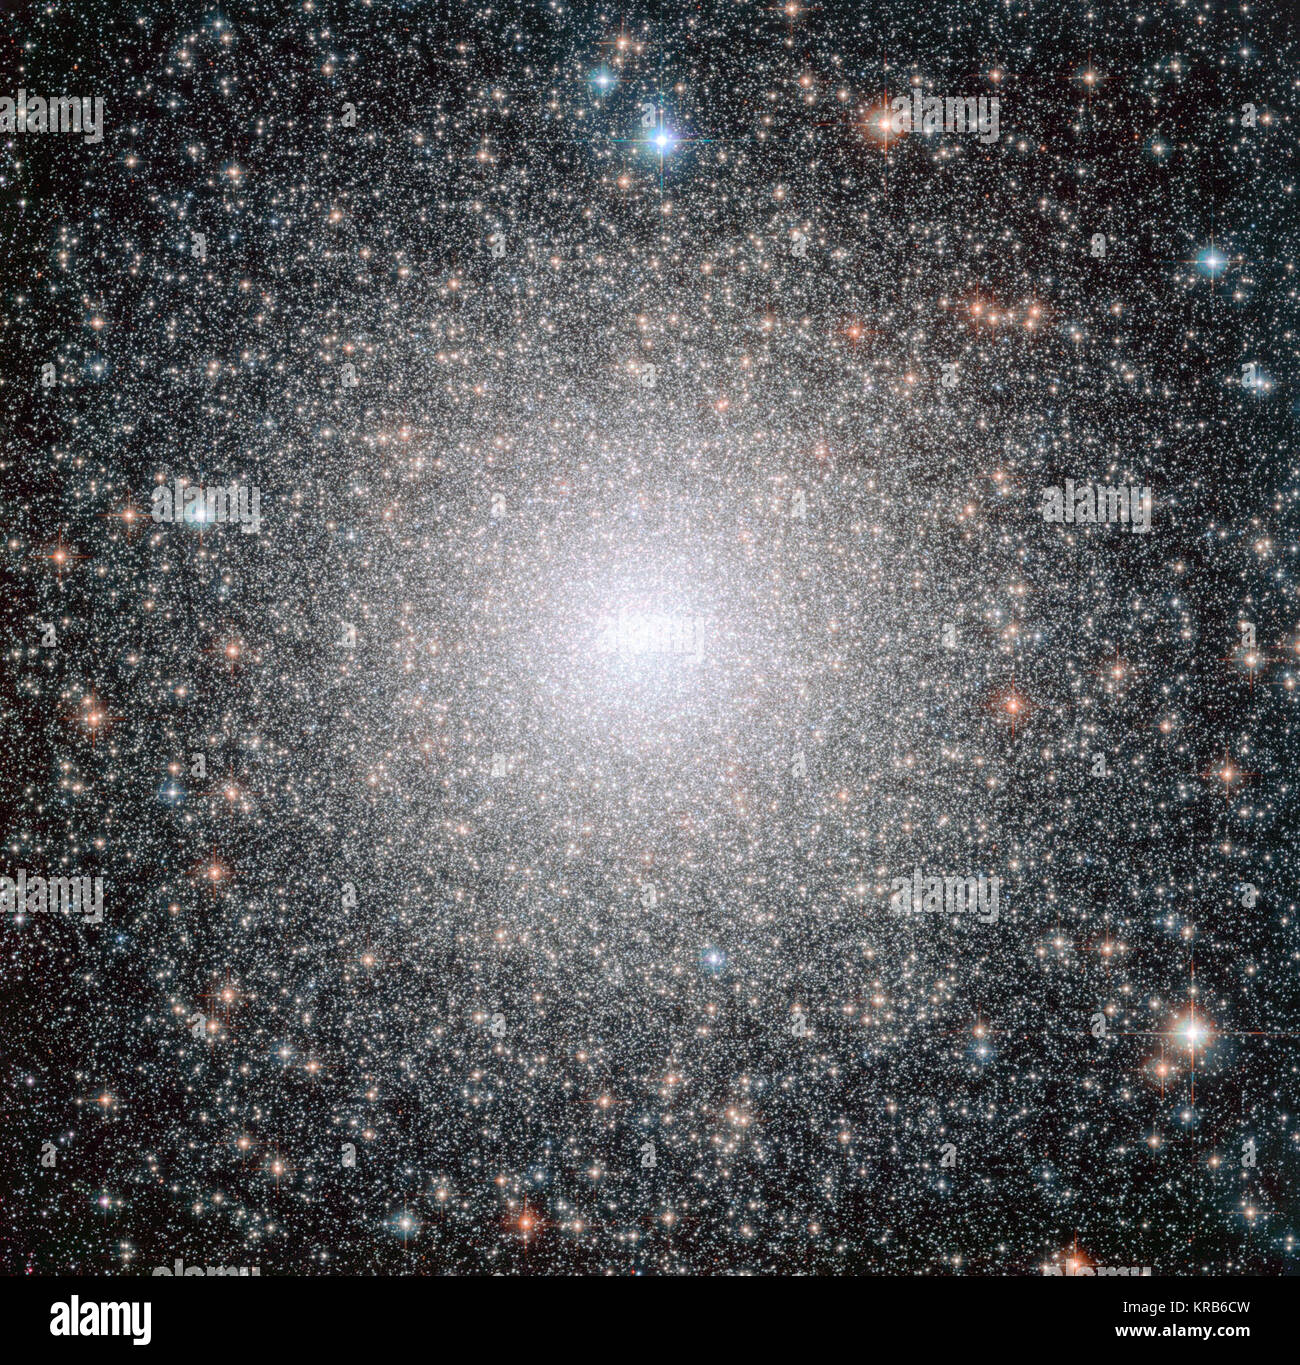 Dieses Bild von der NASA/ESA Hubble Space Telescope zeigt NGC6388, ein dynamisch im mittleren Alter Kugelsternhaufen in der Milchstraße. Während die Cluster in der fernen Vergangenheit gebildet (wie alle Kugelsternhaufen, es ist über zehn Milliarden Jahre alt), eine Studie über die Verteilung der hellen blauen Sterne innerhalb des Clusters zeigt, dass es mit mäßiger Geschwindigkeit gealtert ist, und seine schwersten Sterne sind in den Prozess der Migration in die Mitte. Eine neue mit Hubble Daten Studie hat entdeckt, dass Kugelsternhaufen des gleichen Alters haben kann drastisch unterschiedliche Verteilungen von Blue Straggler stars in ihnen, was darauf hindeutet. Stockfoto